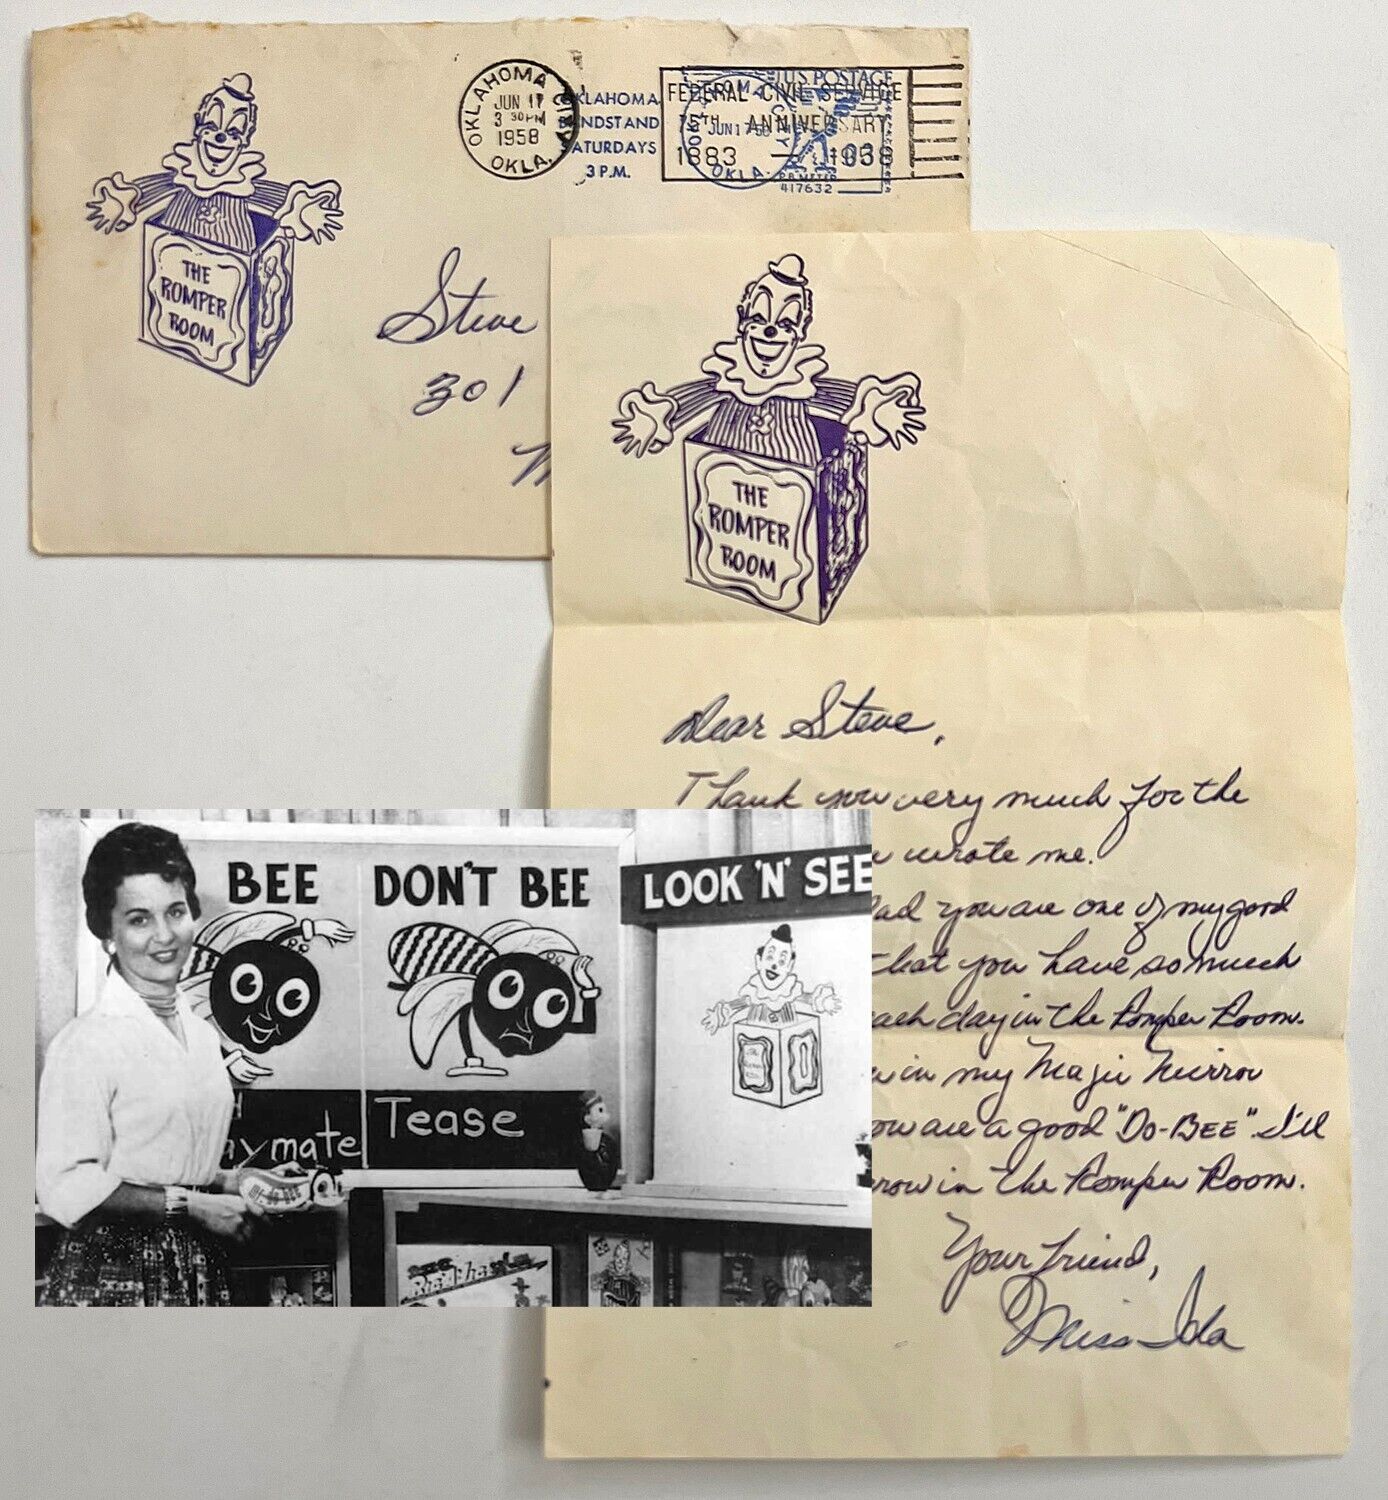 1958 Romper Room letter & envelope from Miss Ida KOCO TV Oklahoma City to STEVE